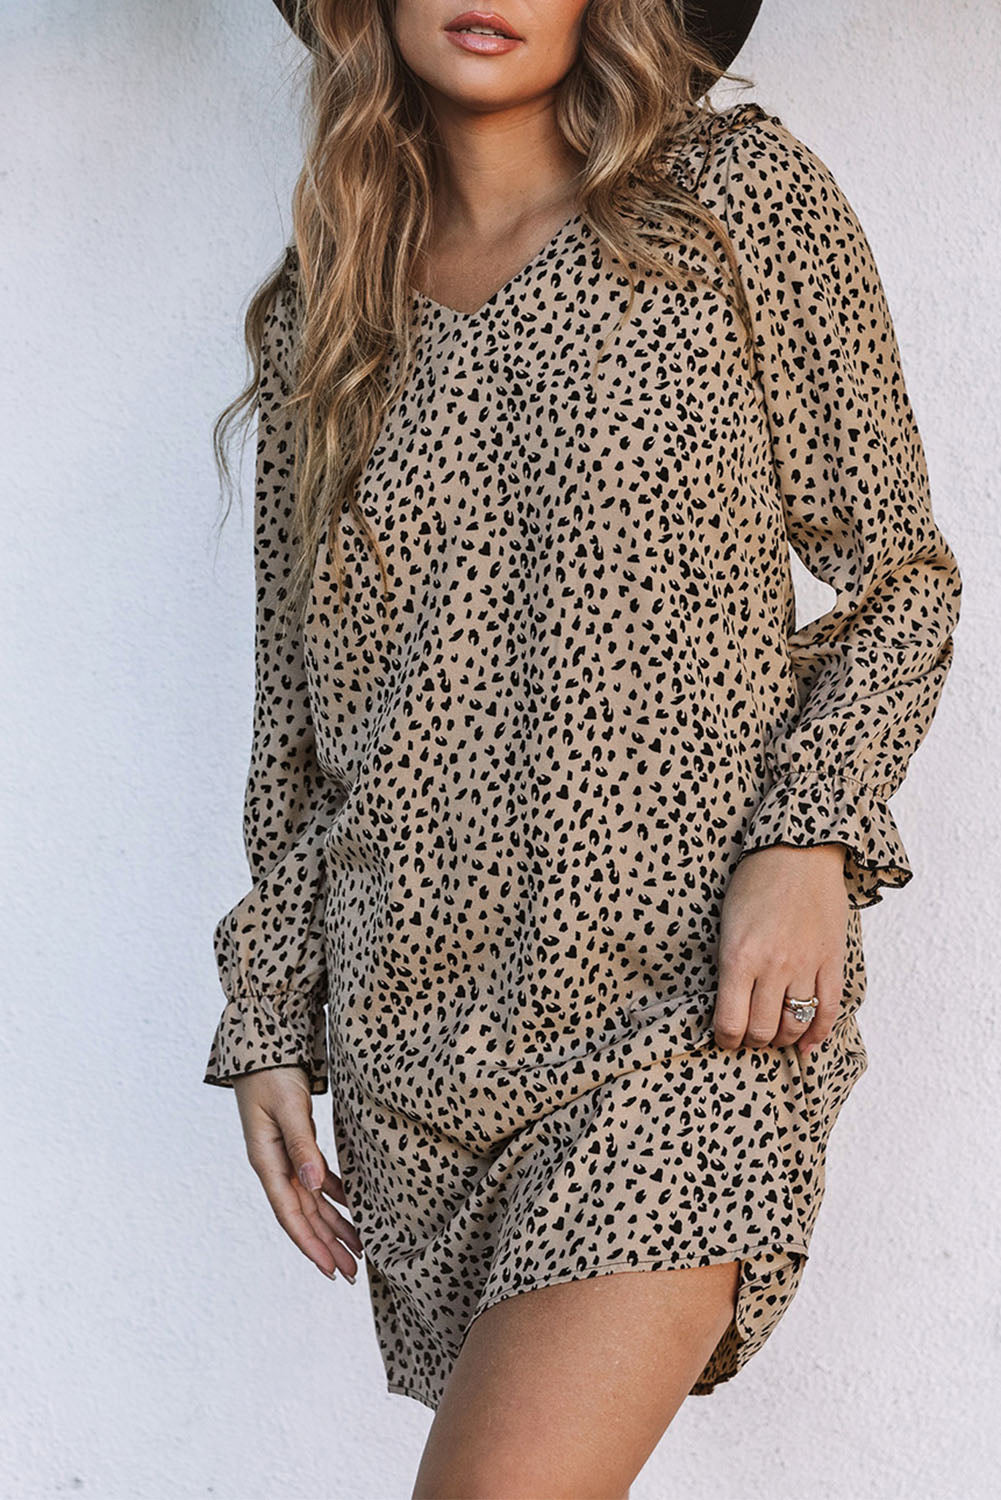 Khakifarbenes Kleid mit Leopardenrüschenbesatz und V-Ausschnitt